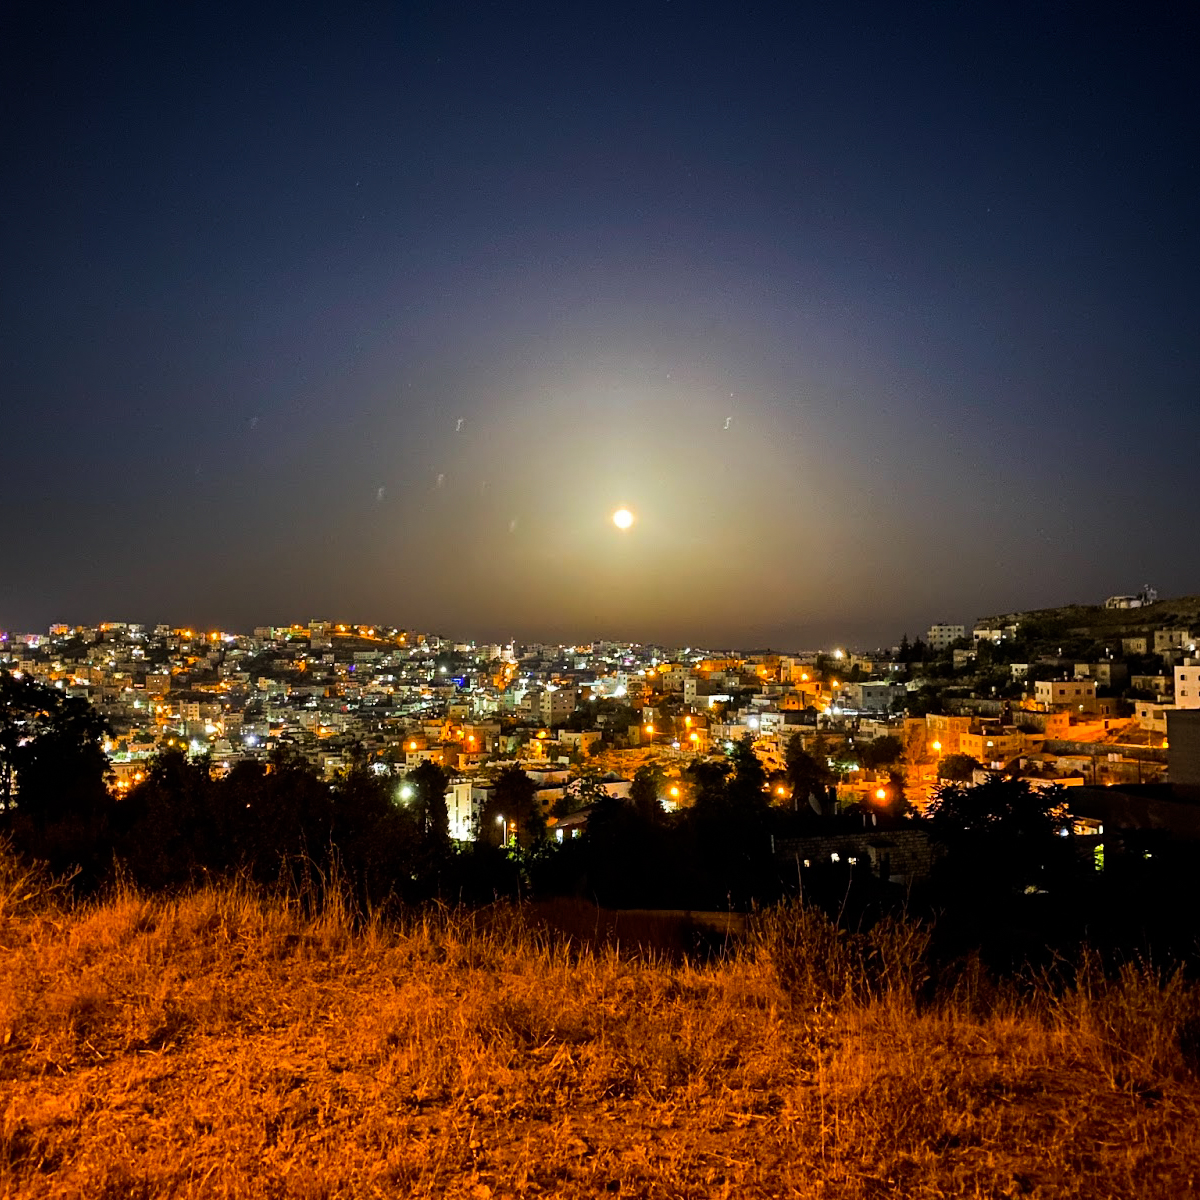 La luna sobre la ciudad vieja de Hebrón, vista desde Tel-Rumeida